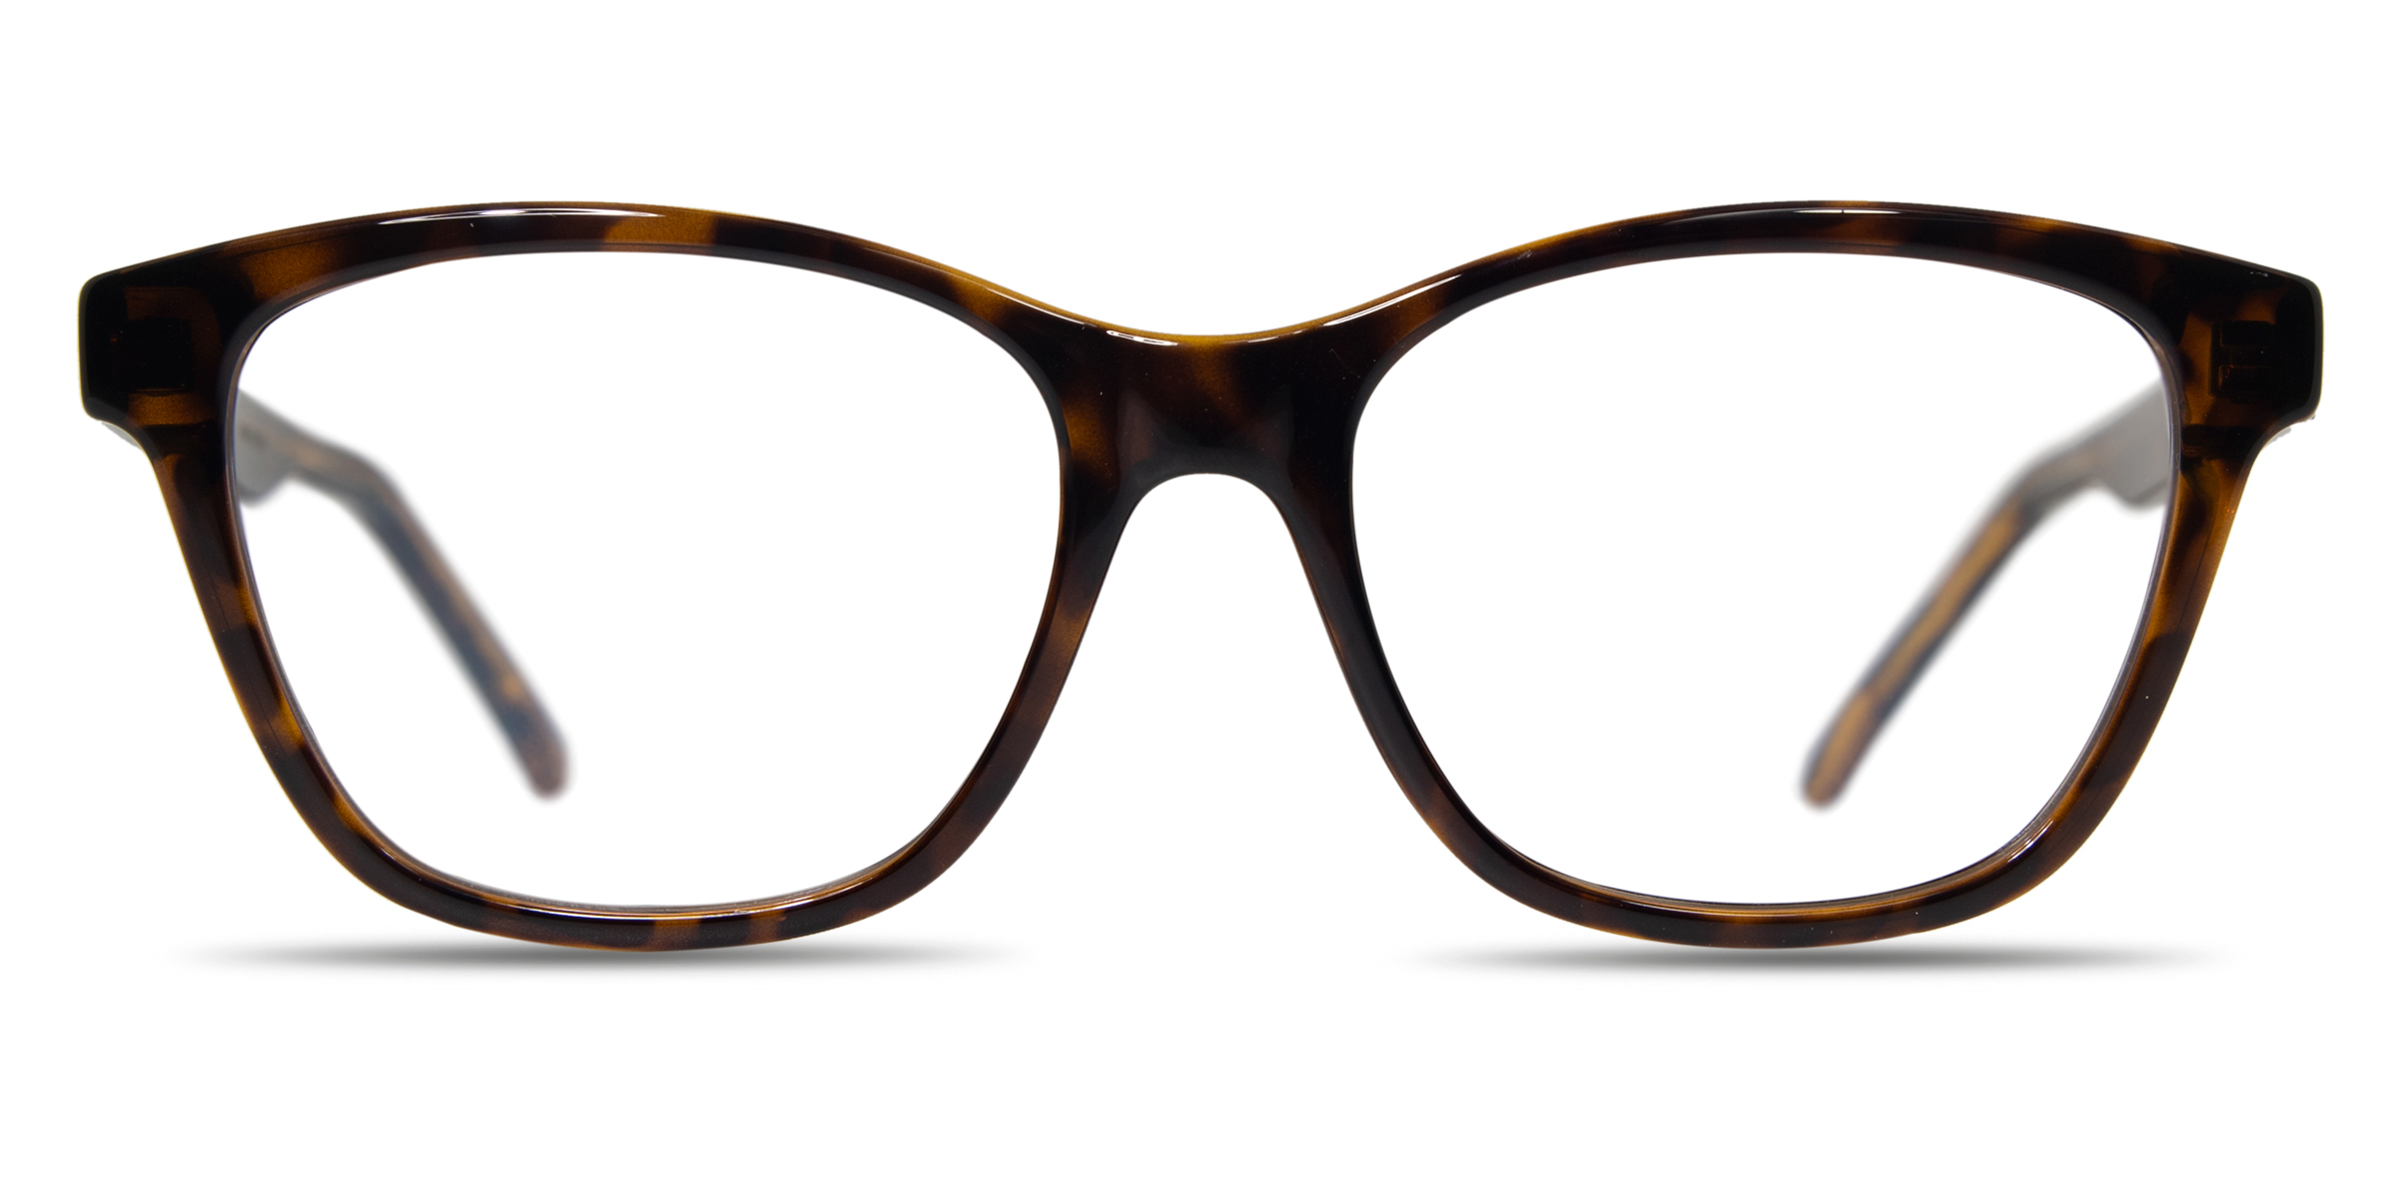 Buy Saint Laurent SL 338 eyeglasses for women at For Eyes